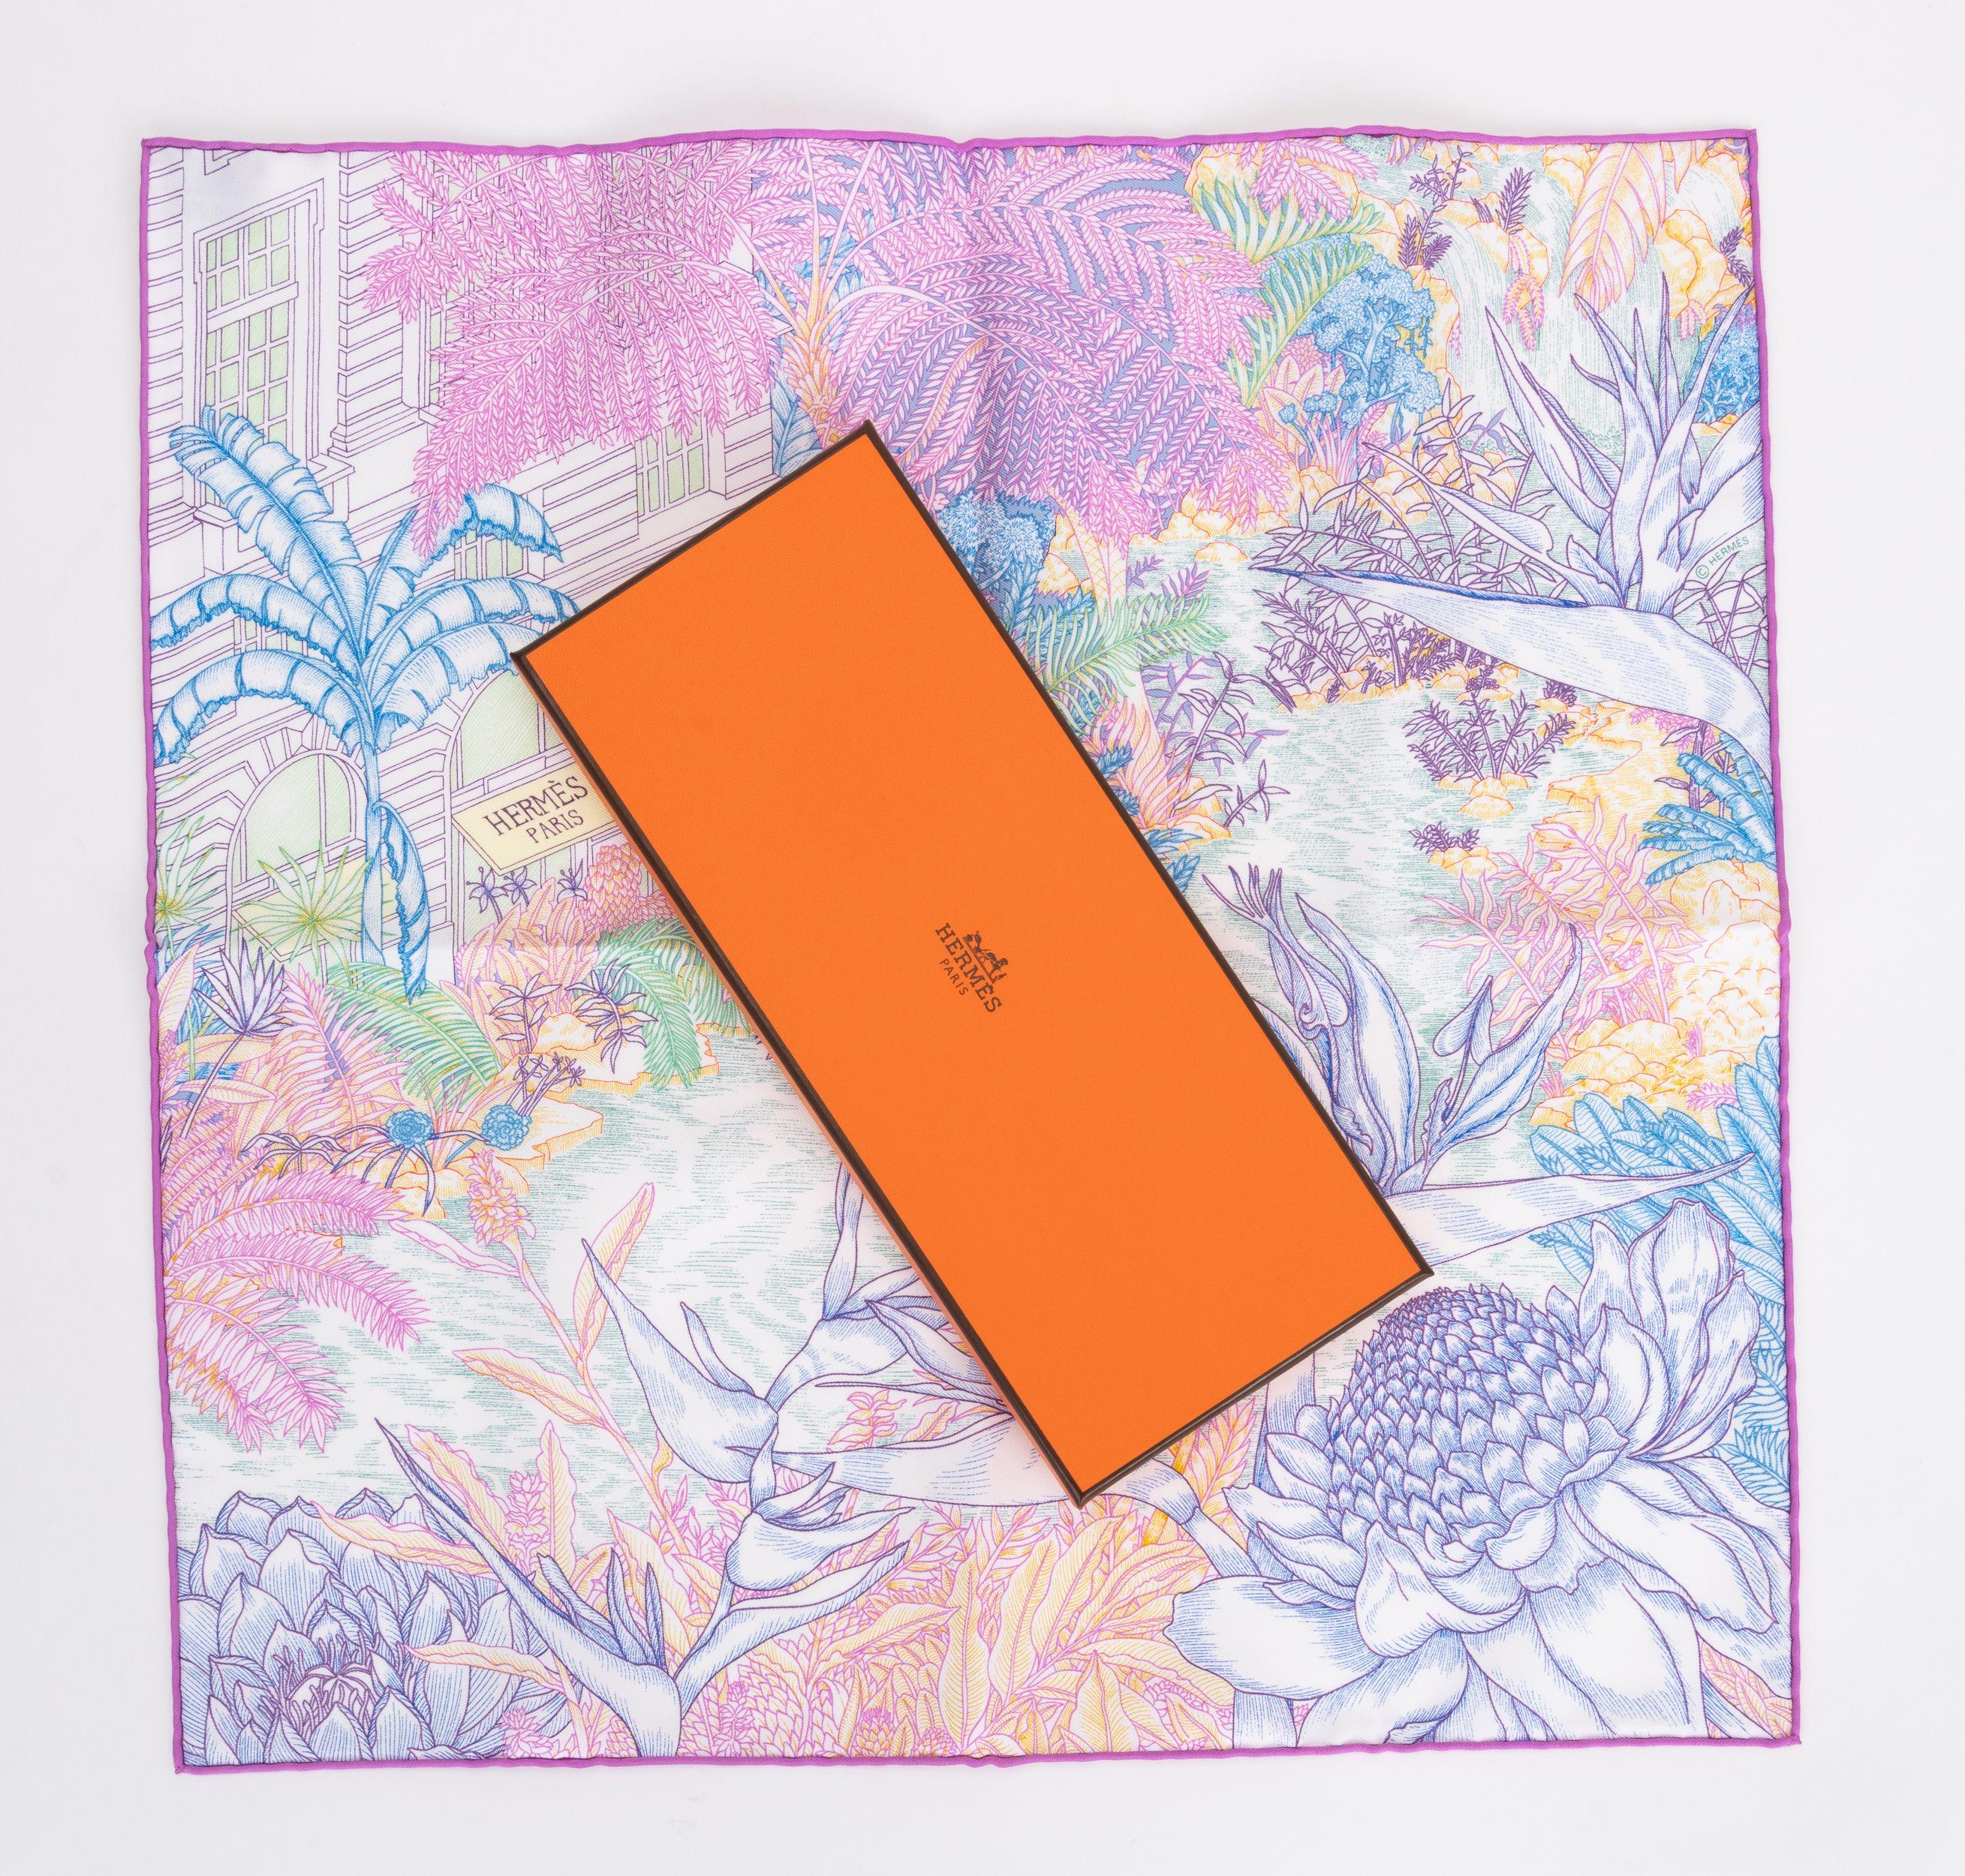 Hermès Marke neu in Box tropischen Garten Pastell Seide gavroche. Handgerollte Kanten. Kommt mit Originalverpackung.